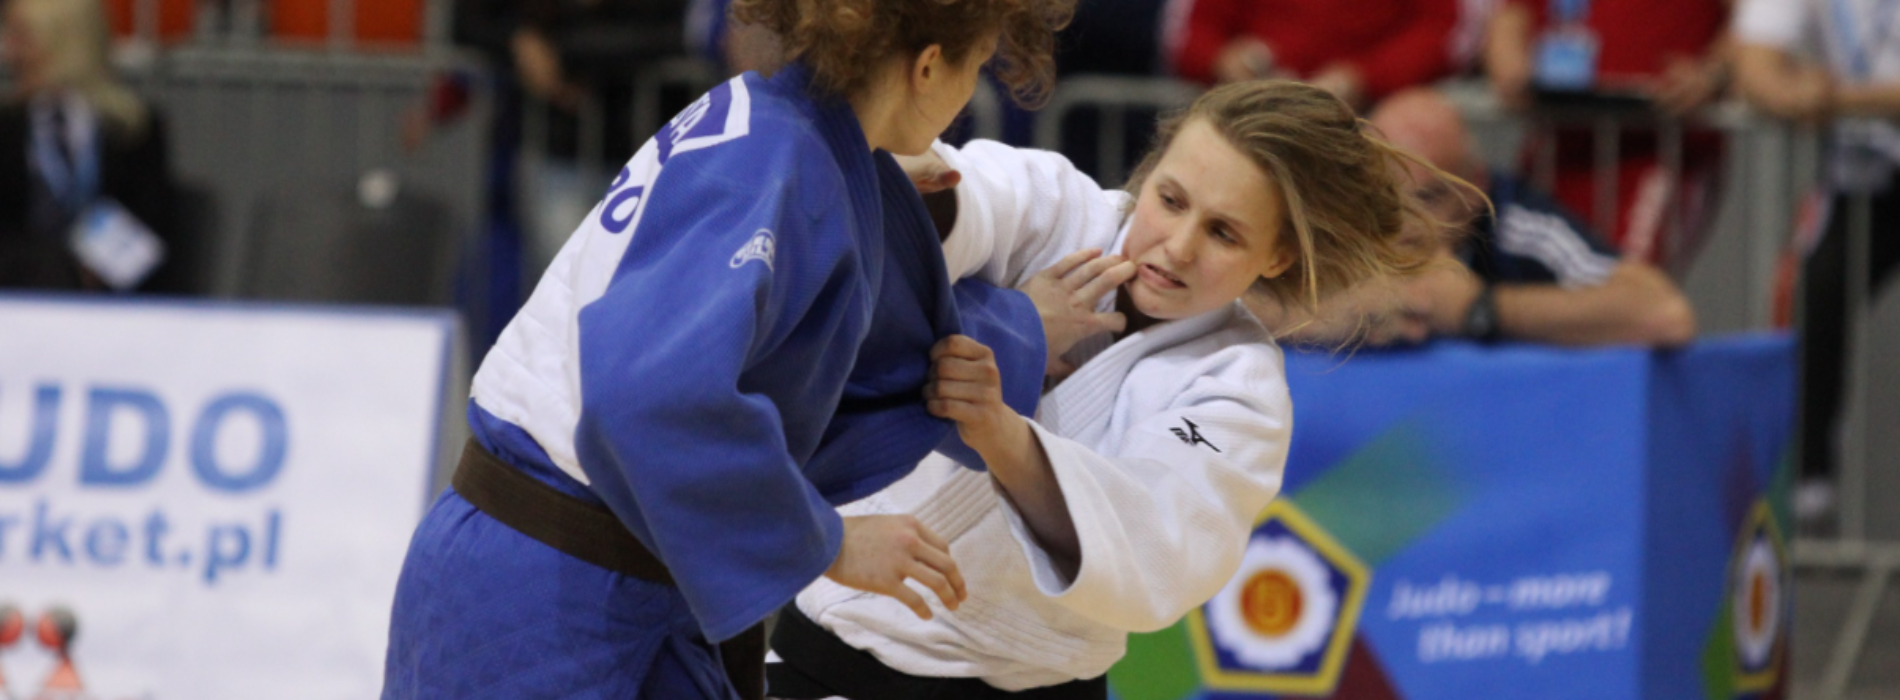 Powalczą judocy